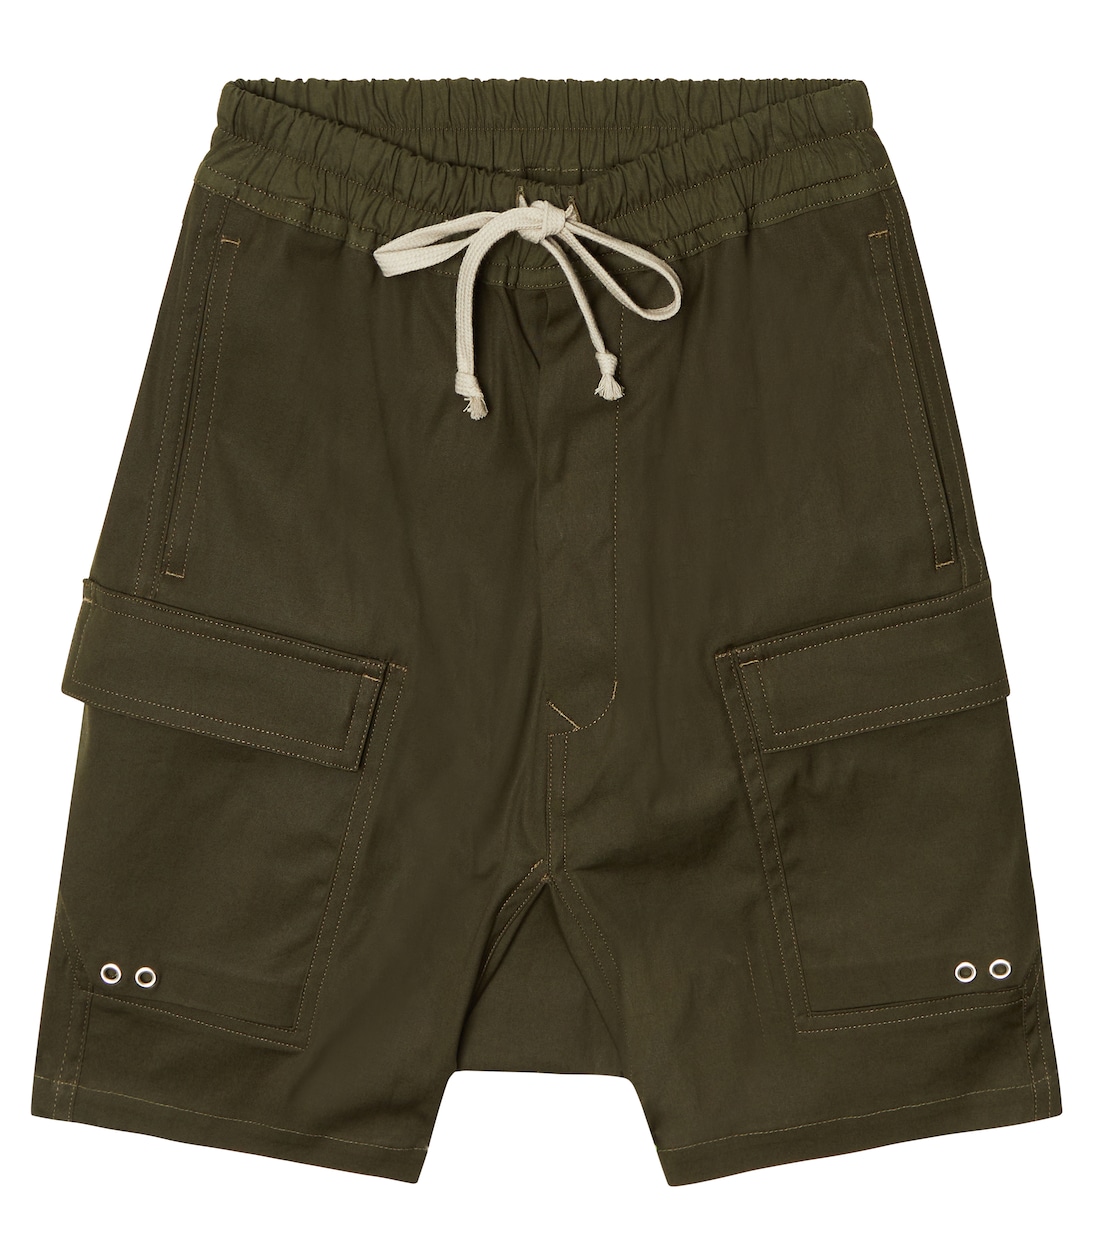 Хлопковые шорты карго Pods Rick Owens, зеленый черные джинсовые шорты карго creatch cargo pods rick owens drkshdw